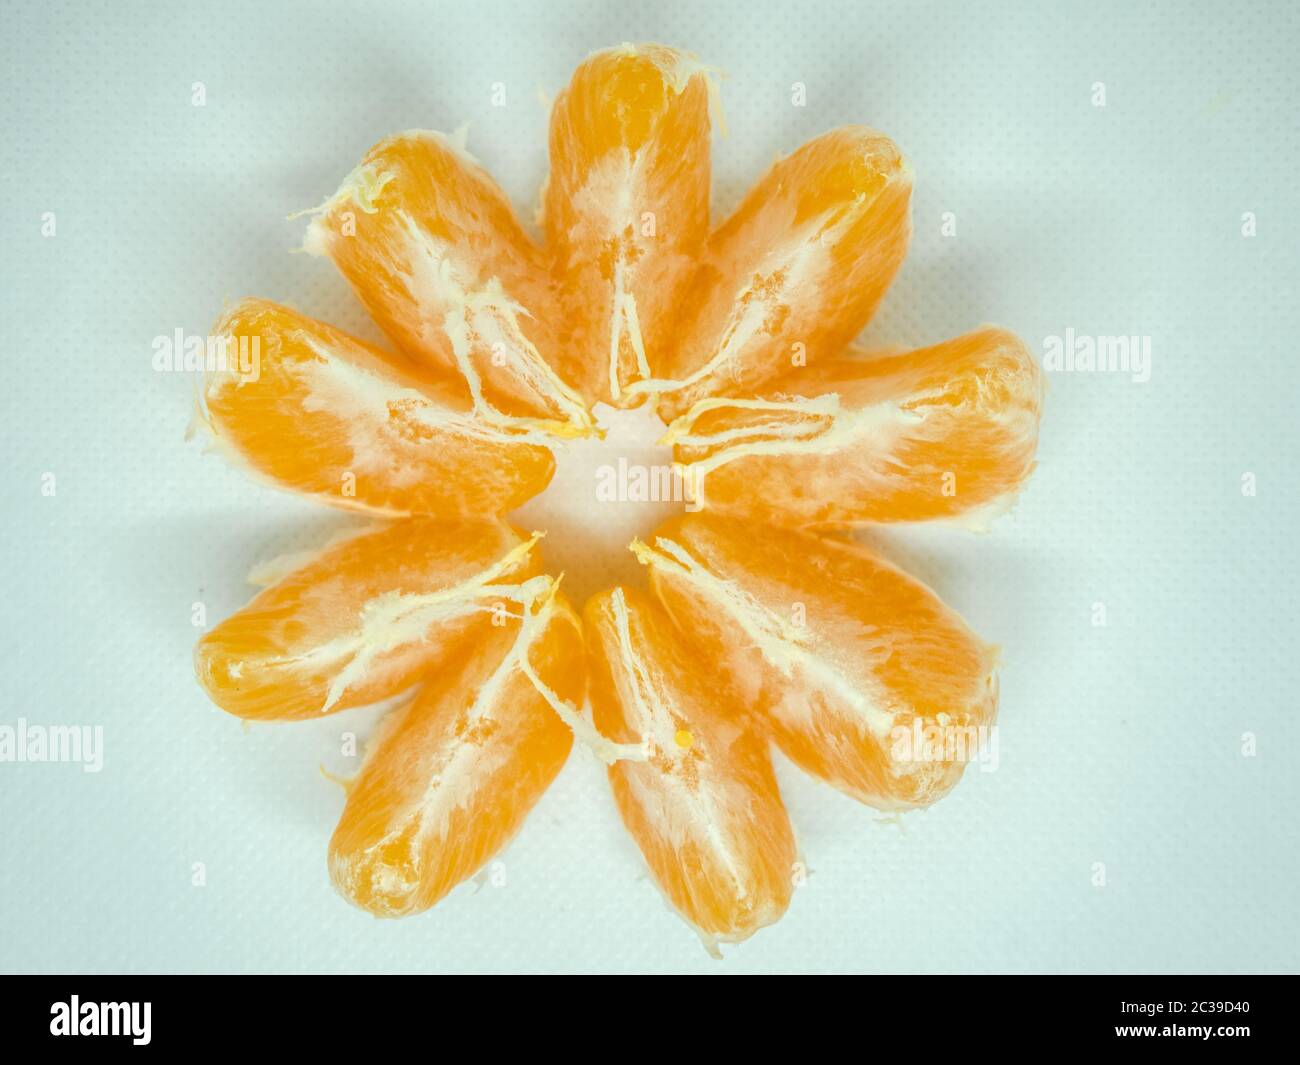 Purified Abkhazian Mandarin on a light background Stock Photo